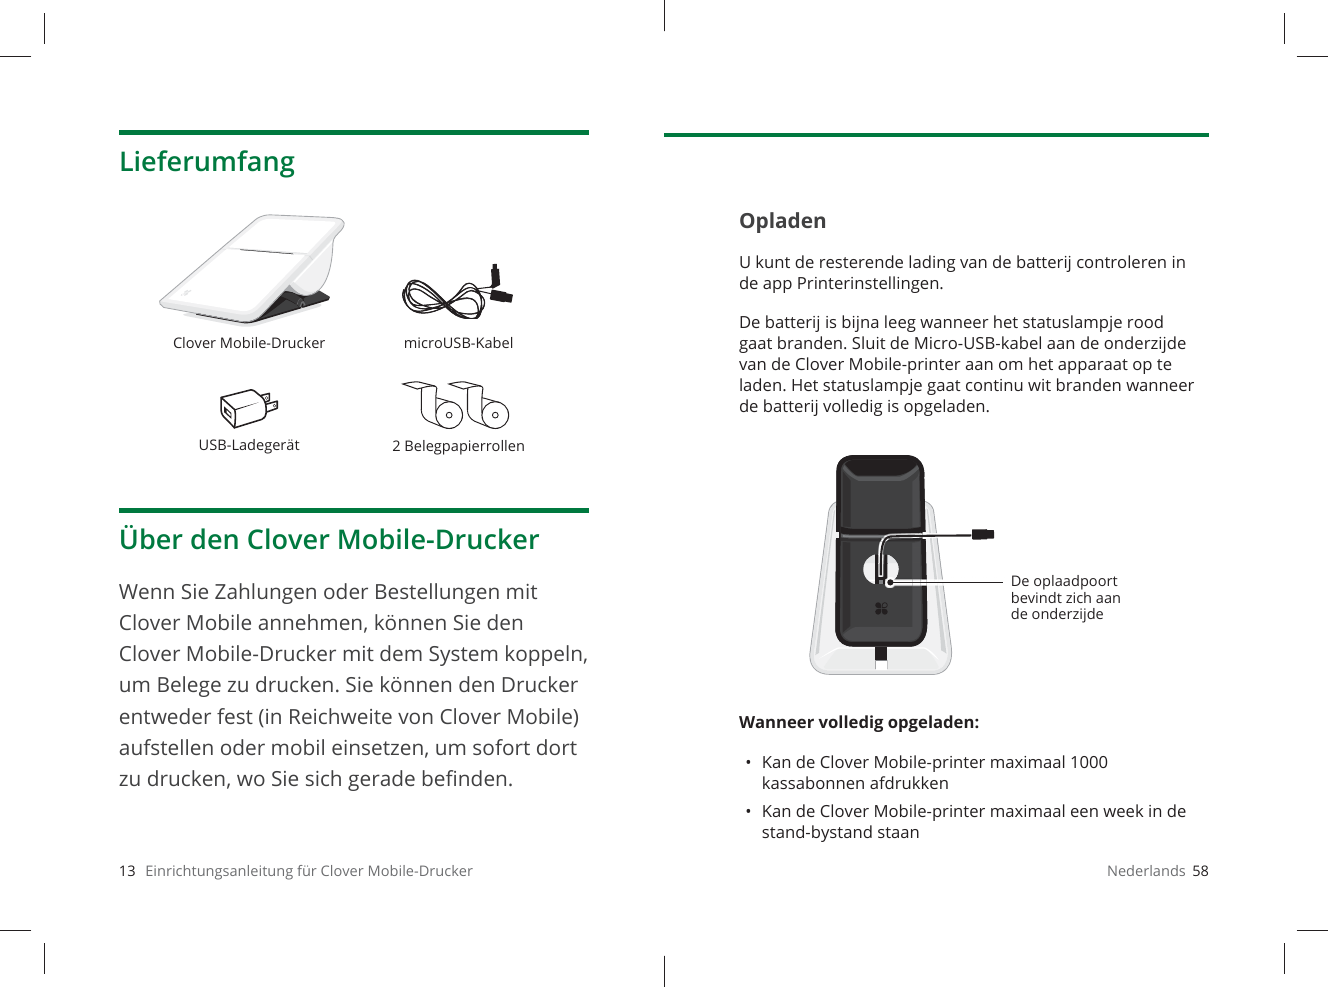 13   Einrichtungsanleitung für Clover Mobile-DruckerLieferumfangÜber den Clover Mobile-DruckerWenn Sie Zahlungen oder Bestellungen mit Clover Mobile annehmen, können Sie den Clover Mobile-Drucker mit dem System koppeln, um Belege zu drucken. Sie können den Drucker entweder fest (in Reichweite von Clover Mobile) aufstellen oder mobil einsetzen, um sofort dort zu drucken, wo Sie sich gerade beﬁ nden.Clover Mobile-Drucker microUSB-KabelUSB-Ladegerät 2BelegpapierrollenNederlands  58OpladenU kunt de resterende lading van de batterij controleren in de app Printerinstellingen. De batterij is bijna leeg wanneer het statuslampje rood gaat branden. Sluit de Micro-USB-kabel aan de onderzijde van de Clover Mobile-printer aan om het apparaat op te laden. Het statuslampje gaat continu wit branden wanneer de batterij volledig is opgeladen.Wanneer volledig opgeladen: •  Kan de Clover Mobile-printer maximaal 1000 kassabonnen afdrukken•  Kan de Clover Mobile-printer maximaal een week in de stand-bystand staanDe oplaadpoort bevindt zich aan de onderzijde